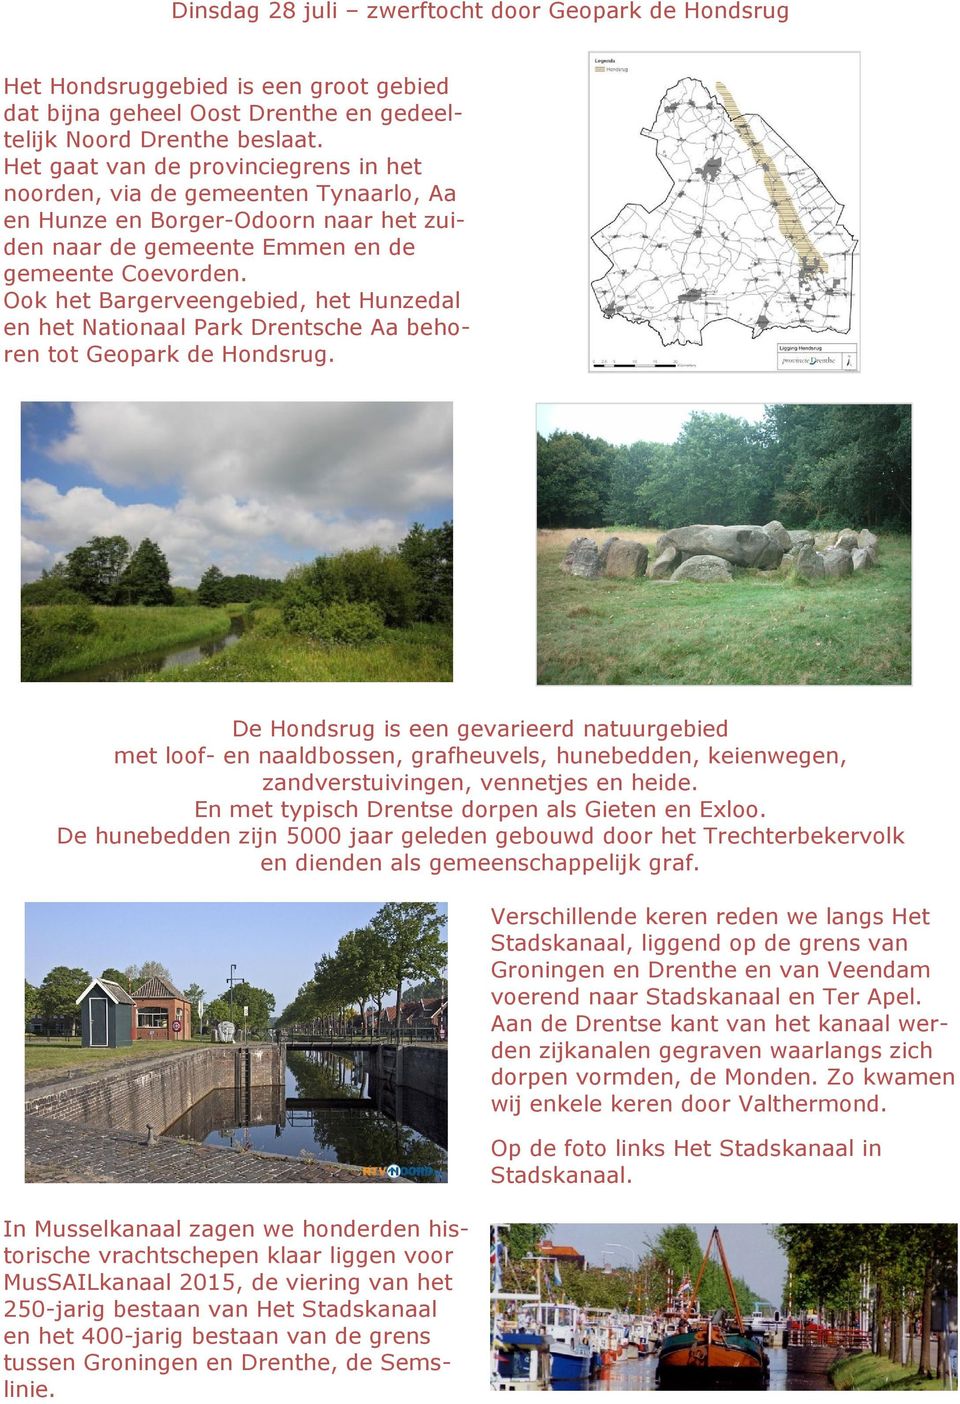 Ook het Bargerveengebied, het Hunzedal en het Nationaal Park Drentsche Aa behoren tot Geopark de Hondsrug.